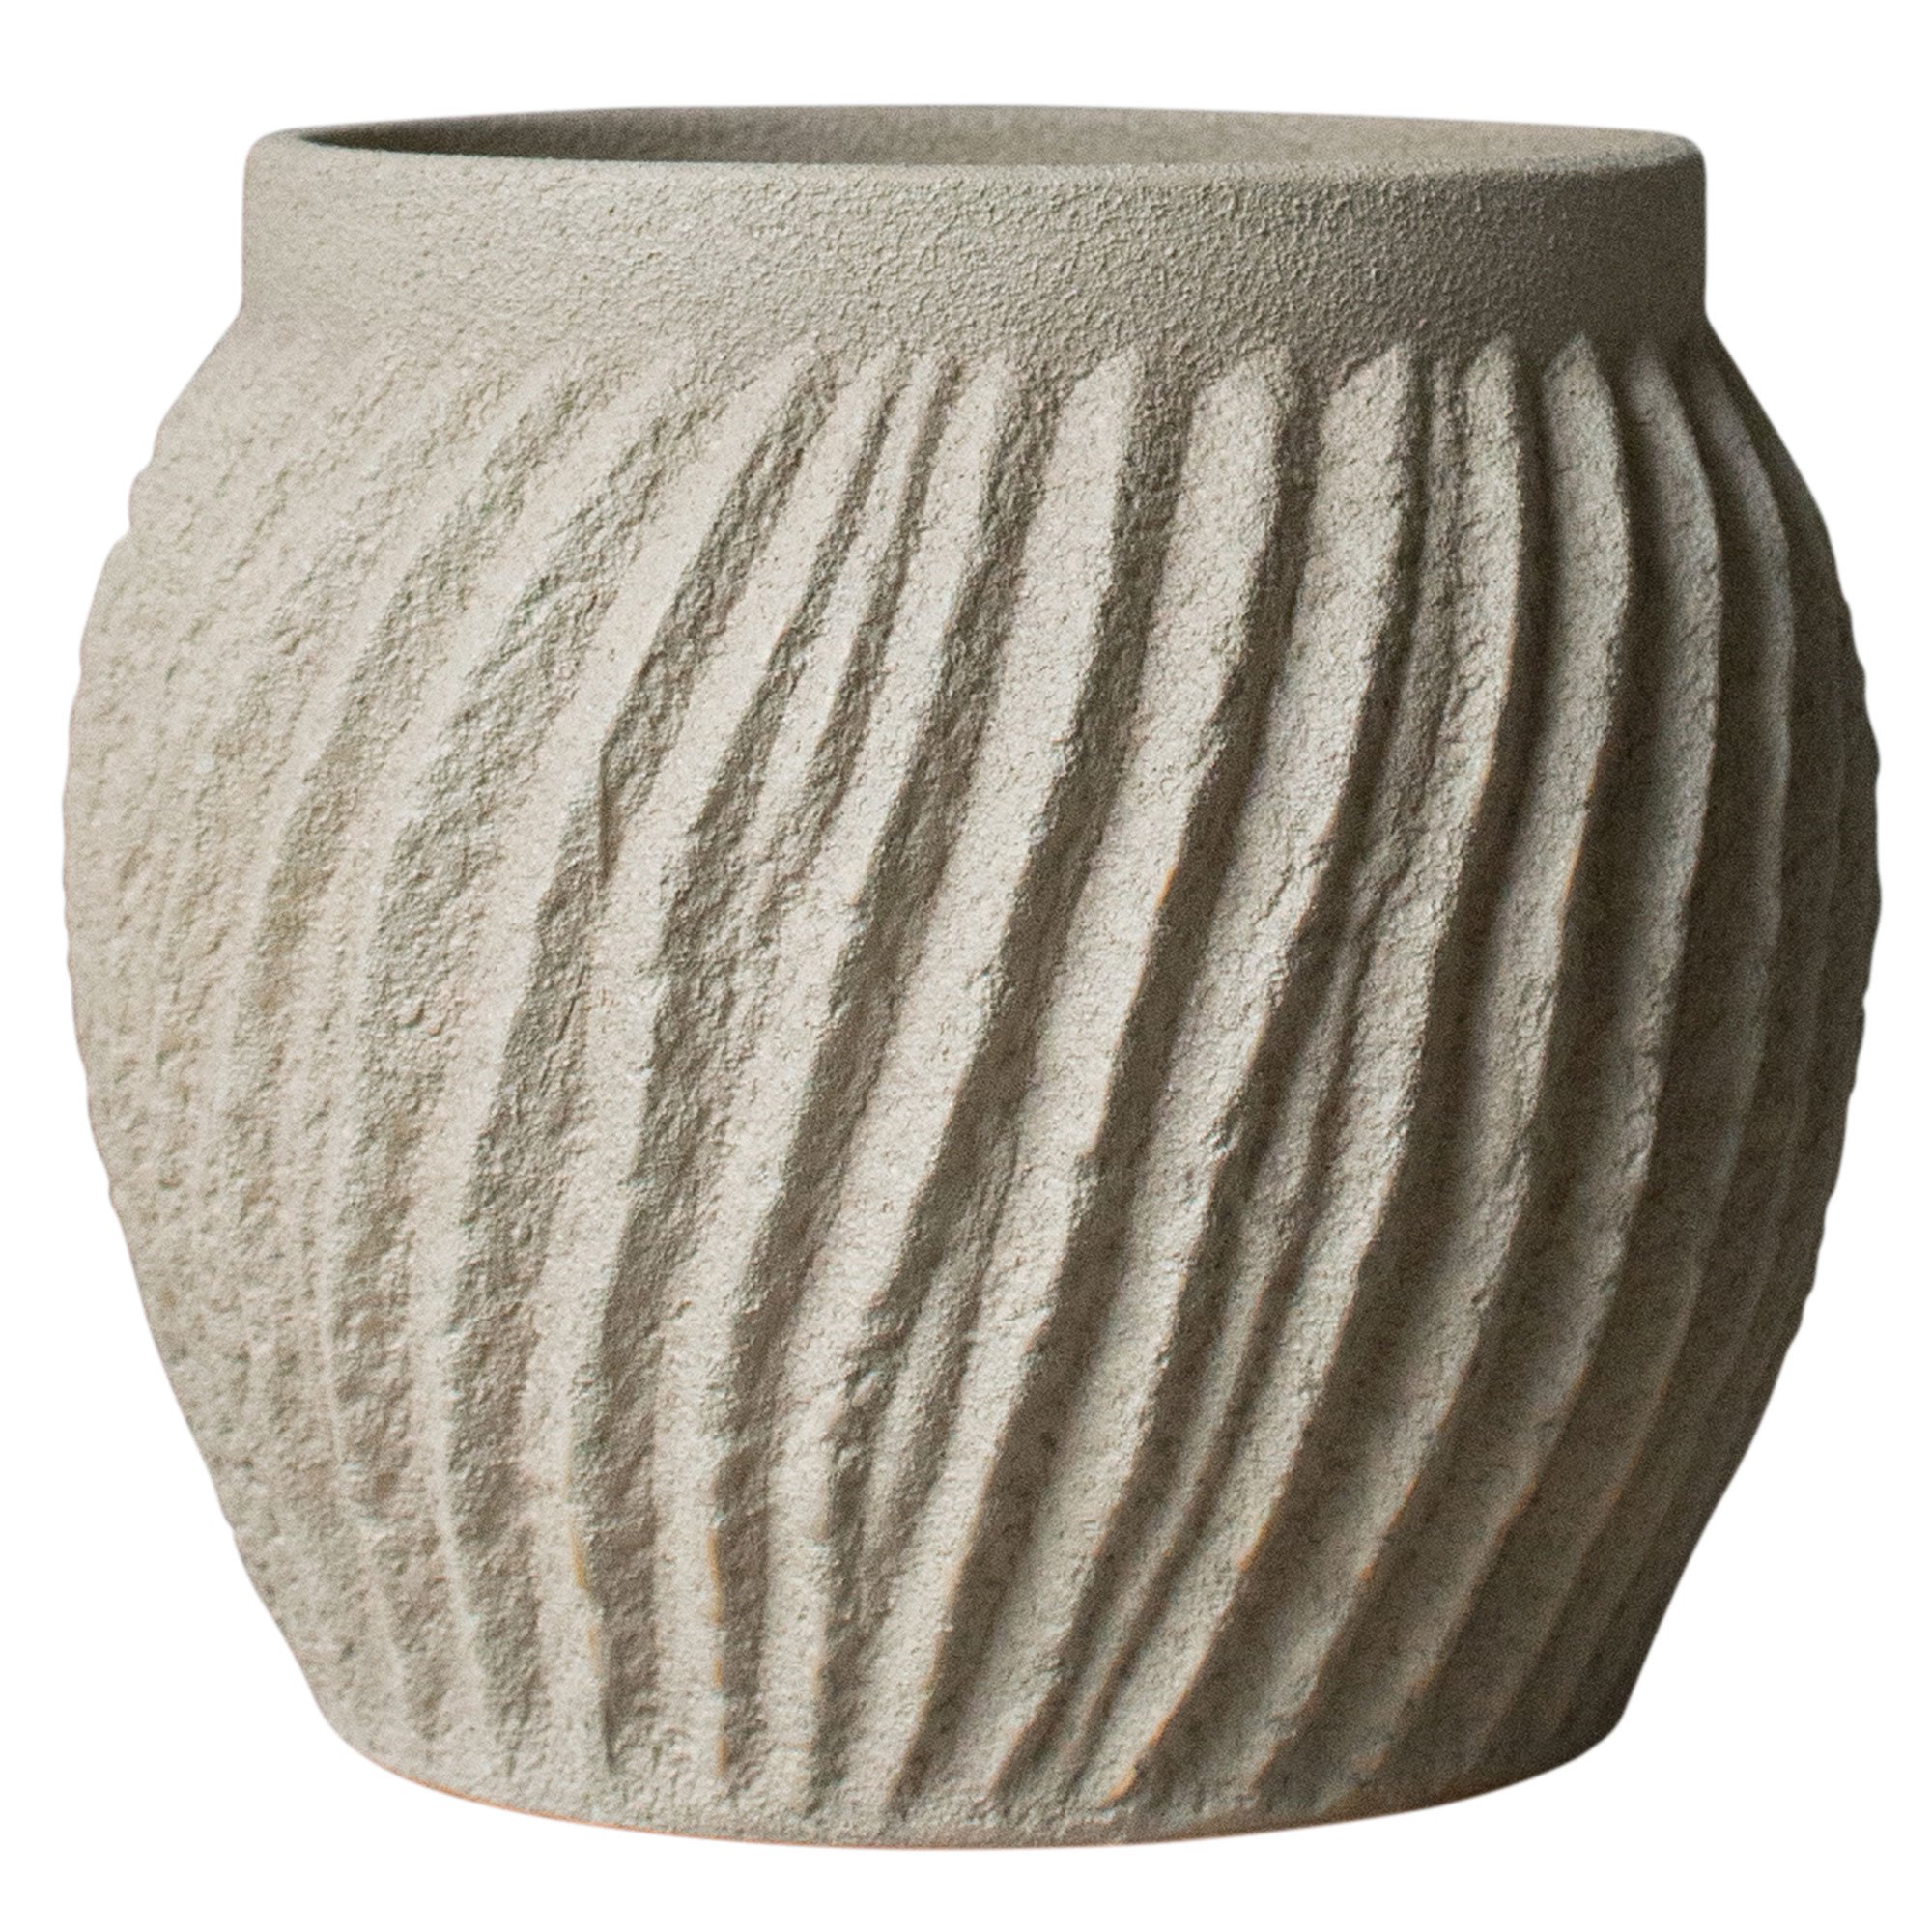 DBKD Raw vas, 19 cm, sandy mole